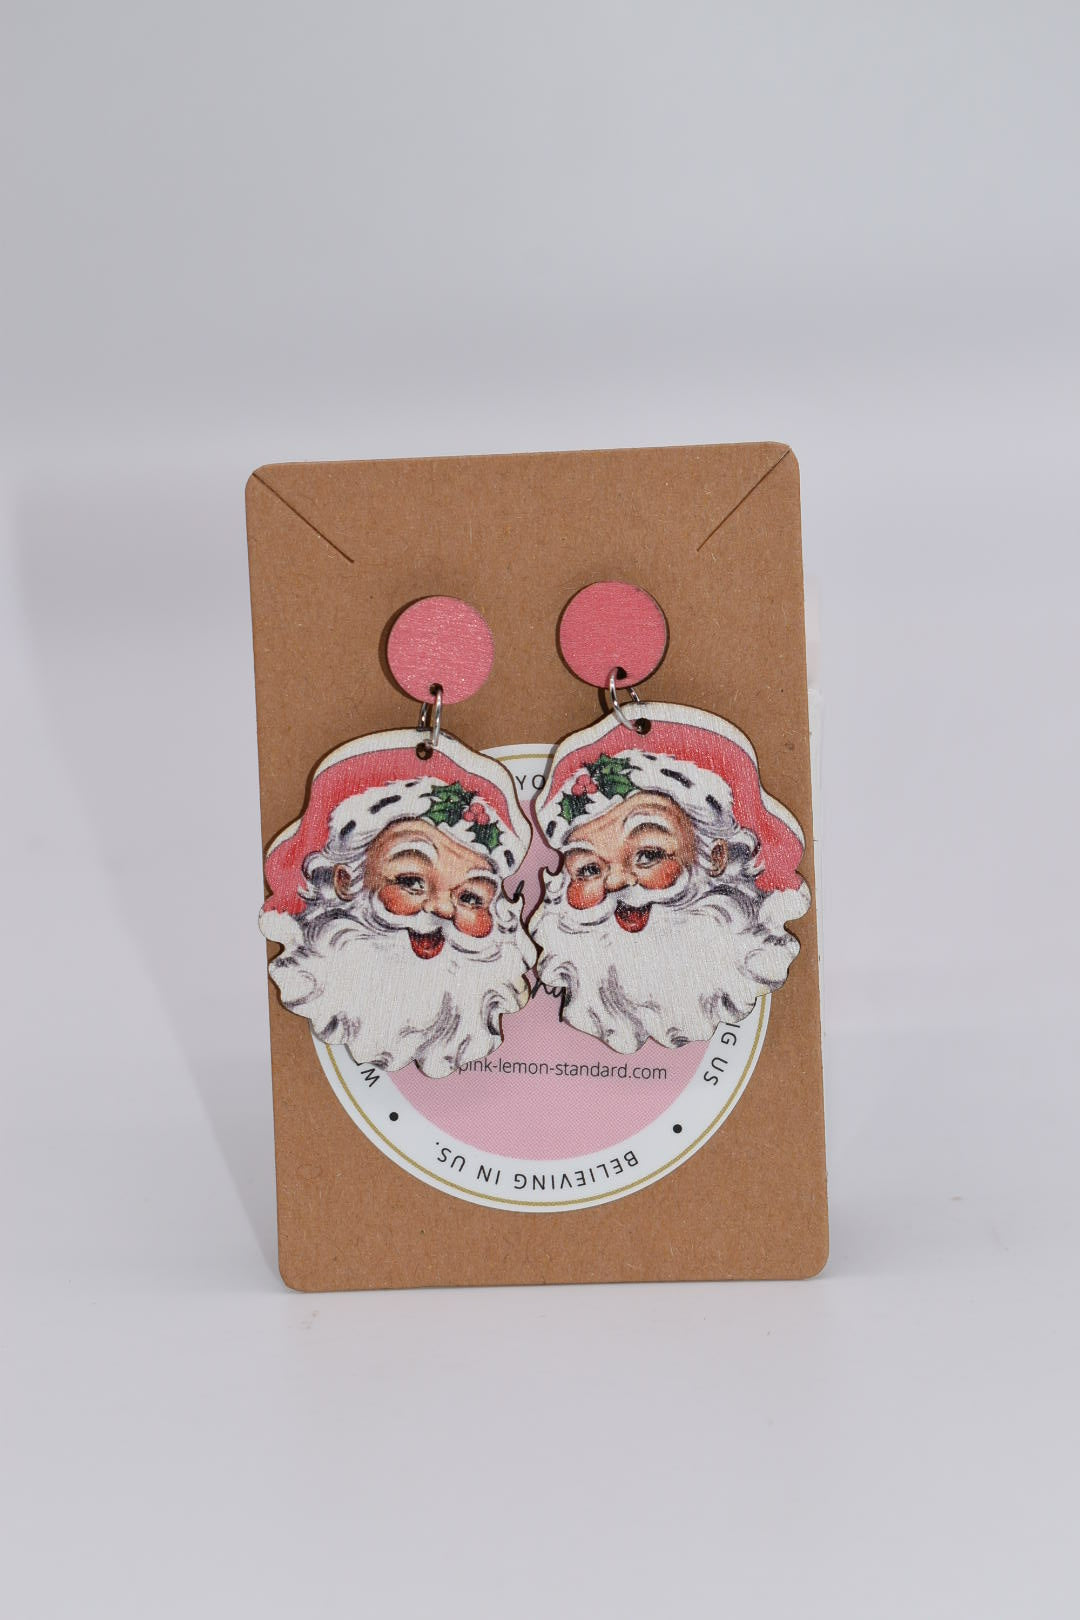 Seasonal Earrings: "Real Santa wears Pink" Earrings